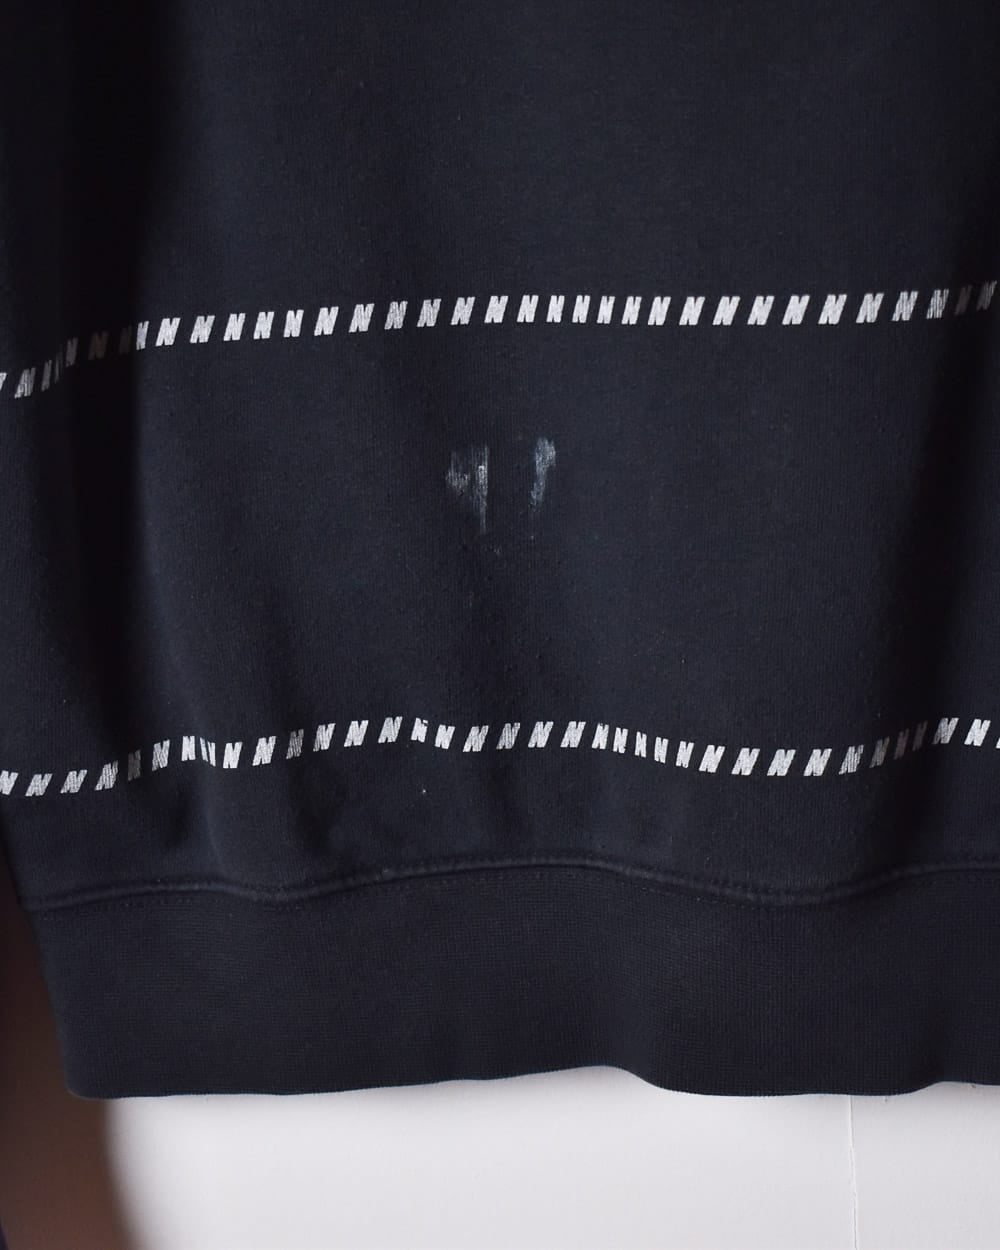 Black Nike Air Sweatshirt - Small